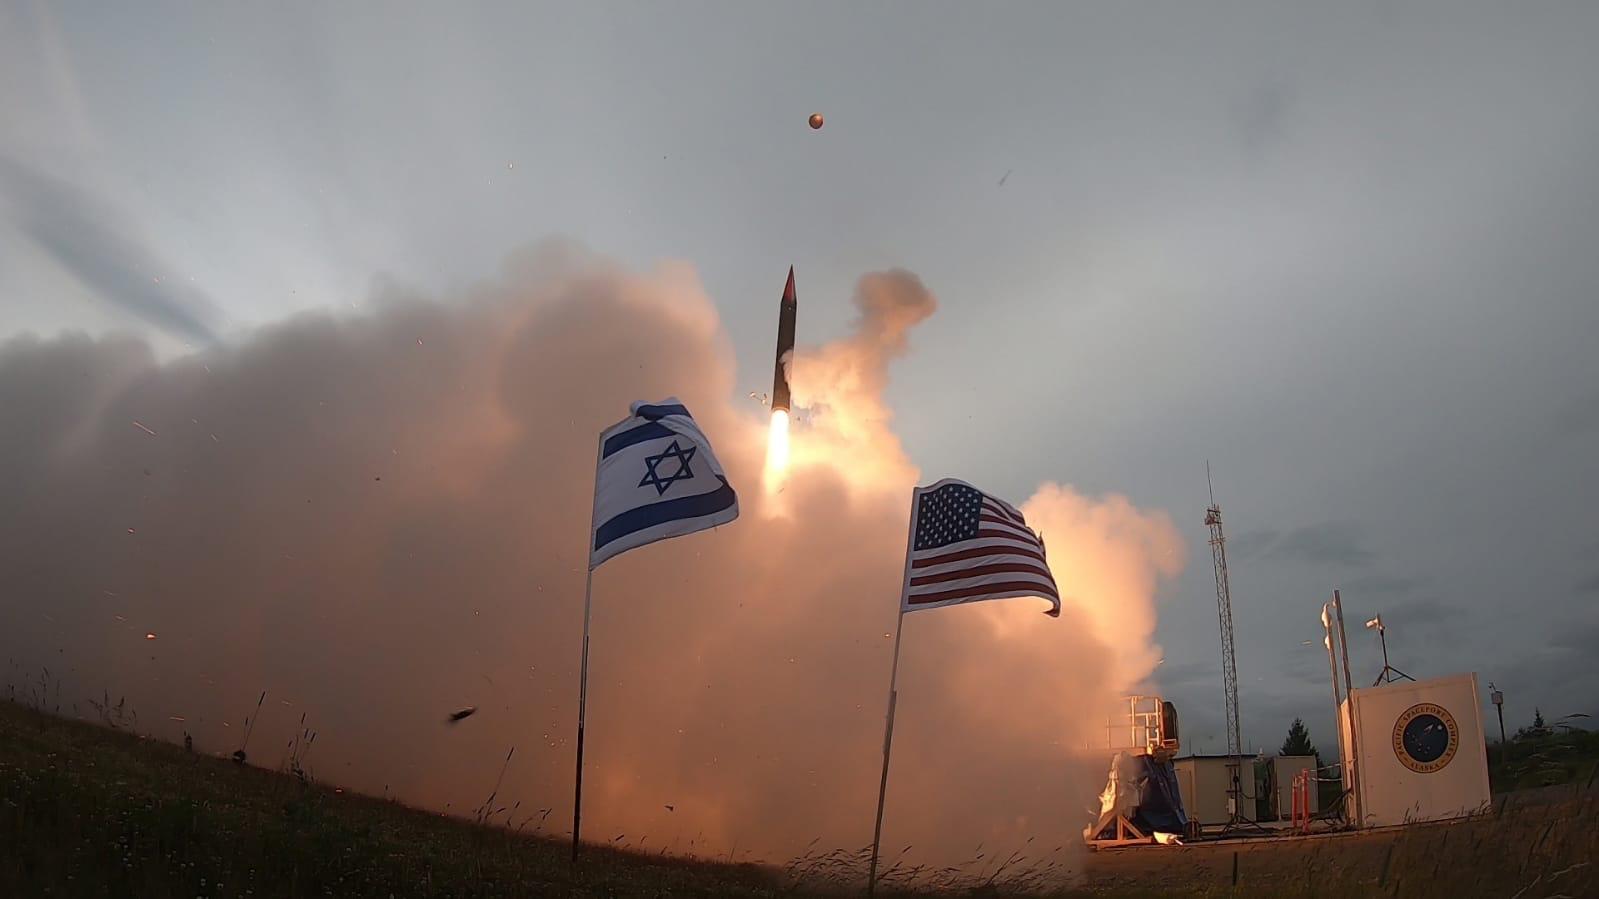 تجربة إطلاق نظام الدفاع الصاروخي Arrow 3 التي أصدرتها وزارة الدفاع في 28 يوليو 2019. (وزارة الدفاع) تجربة إطلاق نظام الدفاع الصاروخي Arrow 3 التي أصدرتها وزارة الدفاع في 28 يوليو 2019. (وزارة الدفاع)